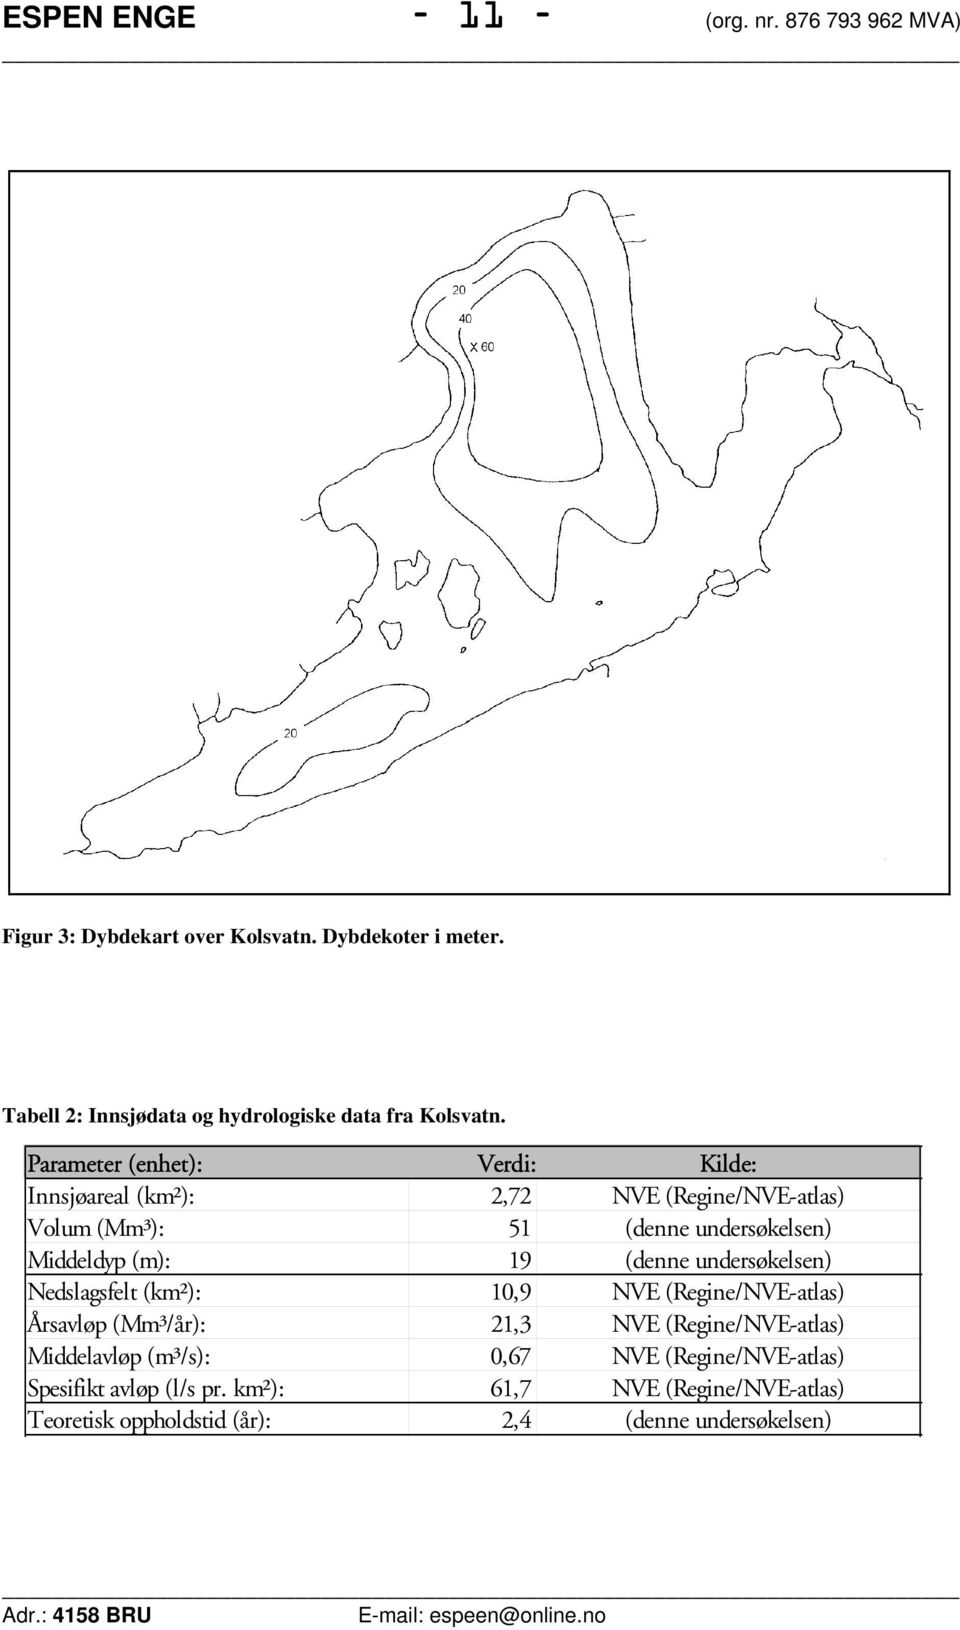 Parameter (enhet): Verdi: Kilde: Innsjøareal (km²): 2,72 NVE (Regine/NVE-atlas) Volum (Mm³): 51 (denne undersøkelsen) Middeldyp (m): 19